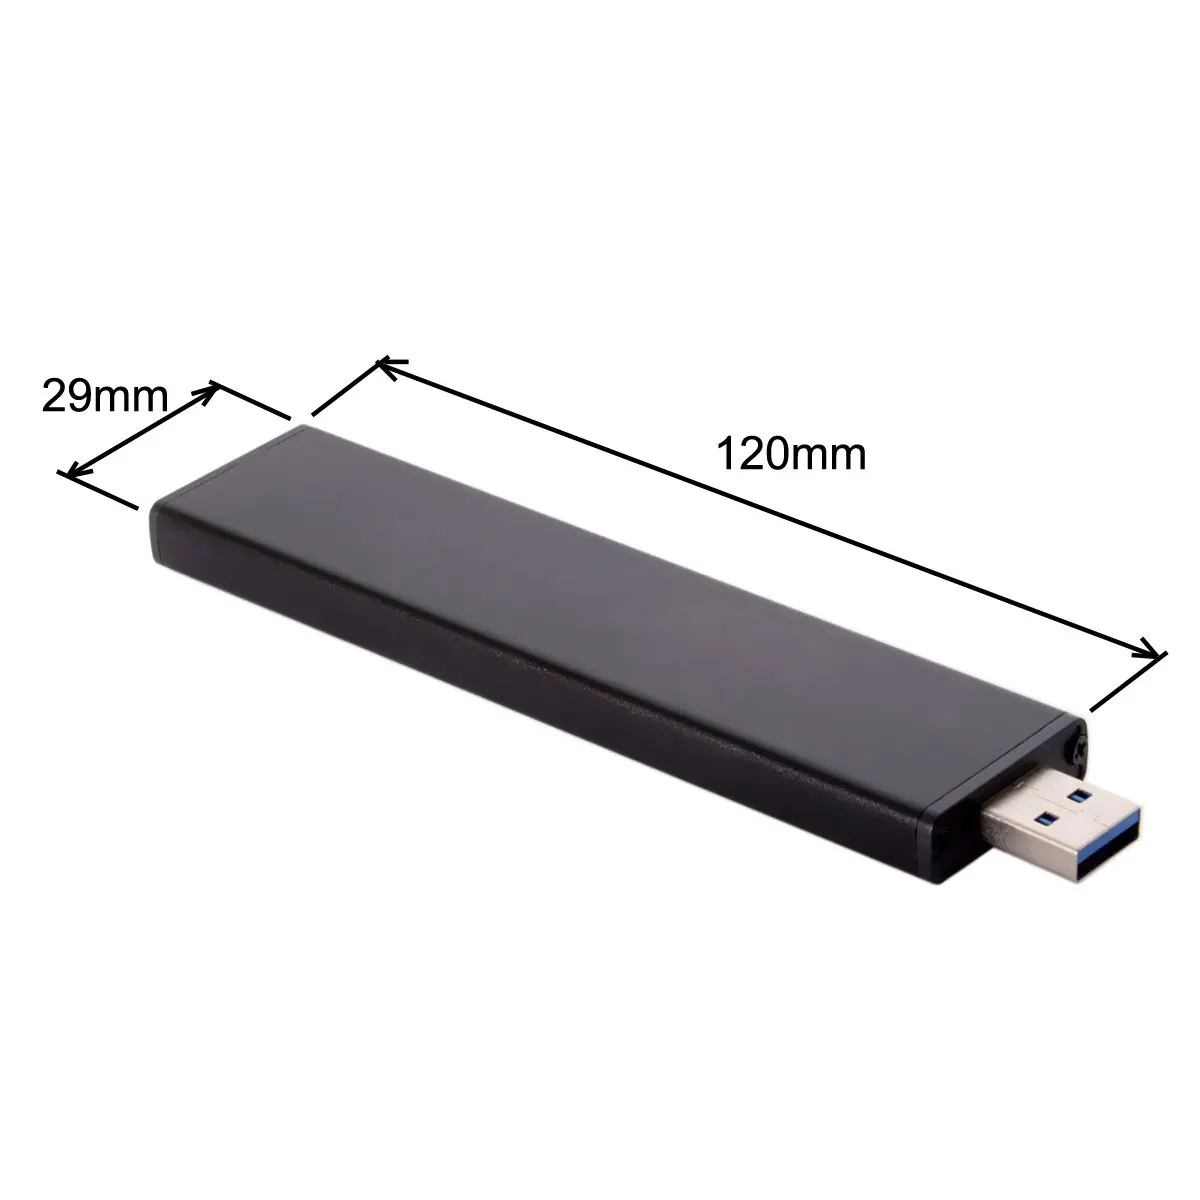 Jimier 17+7pin SSD HDD USB 3.0 Mees Kõvaketta Kassett Drive for Mac Book AIR A1465 A1466 MD223 MD224 MD231 MD213 MD232 0